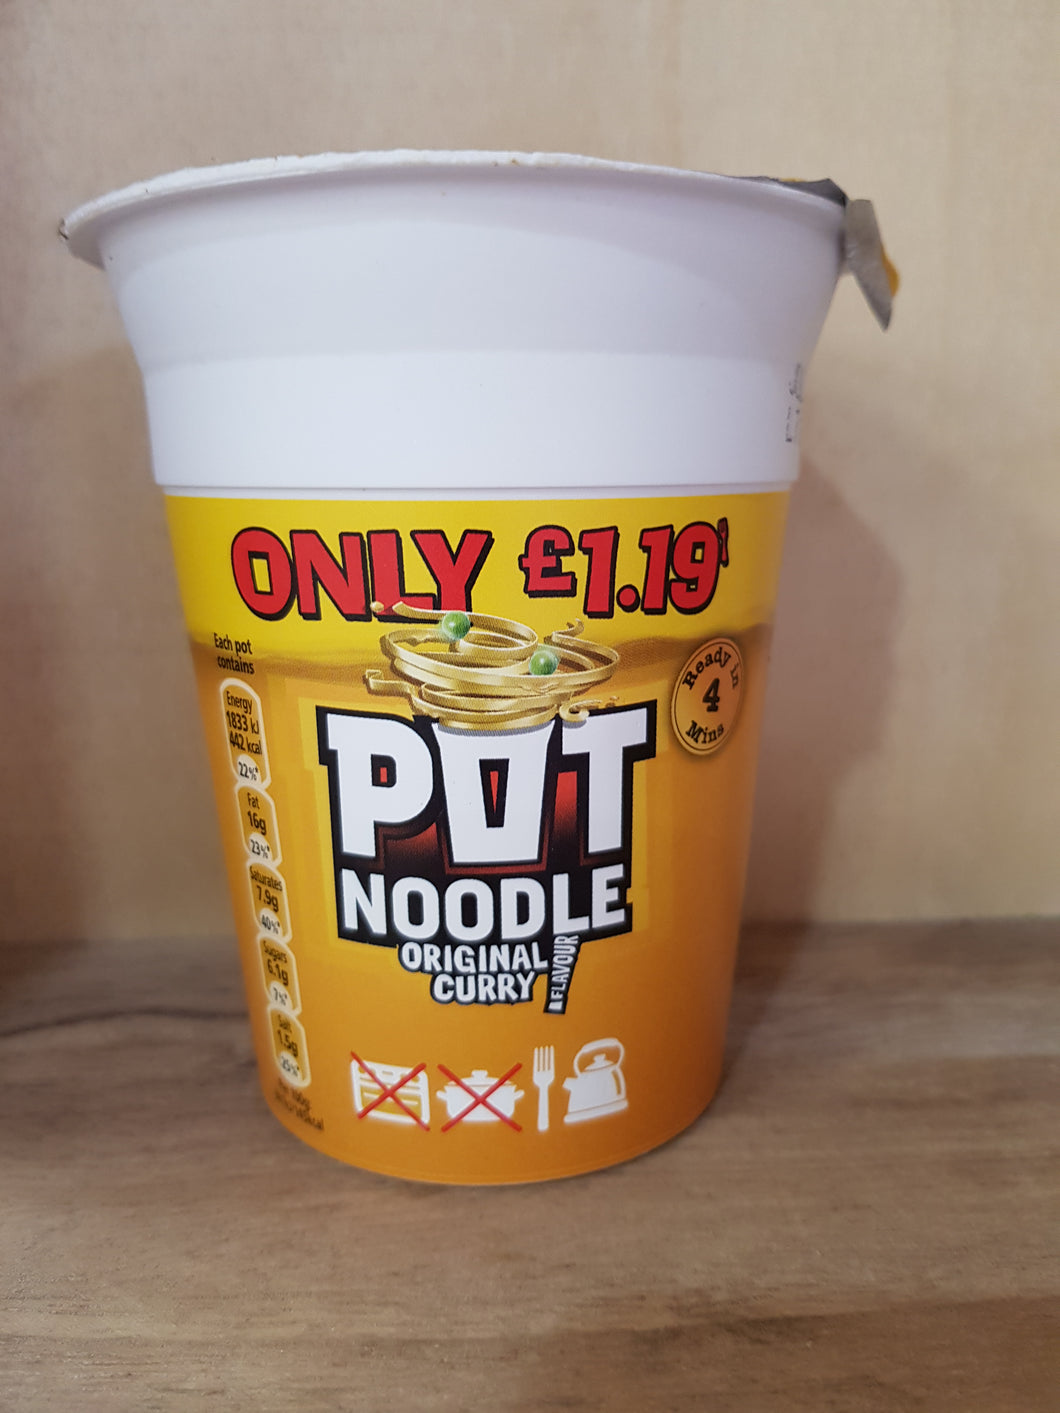 Pot Noodle Original Curry Flavour 90g